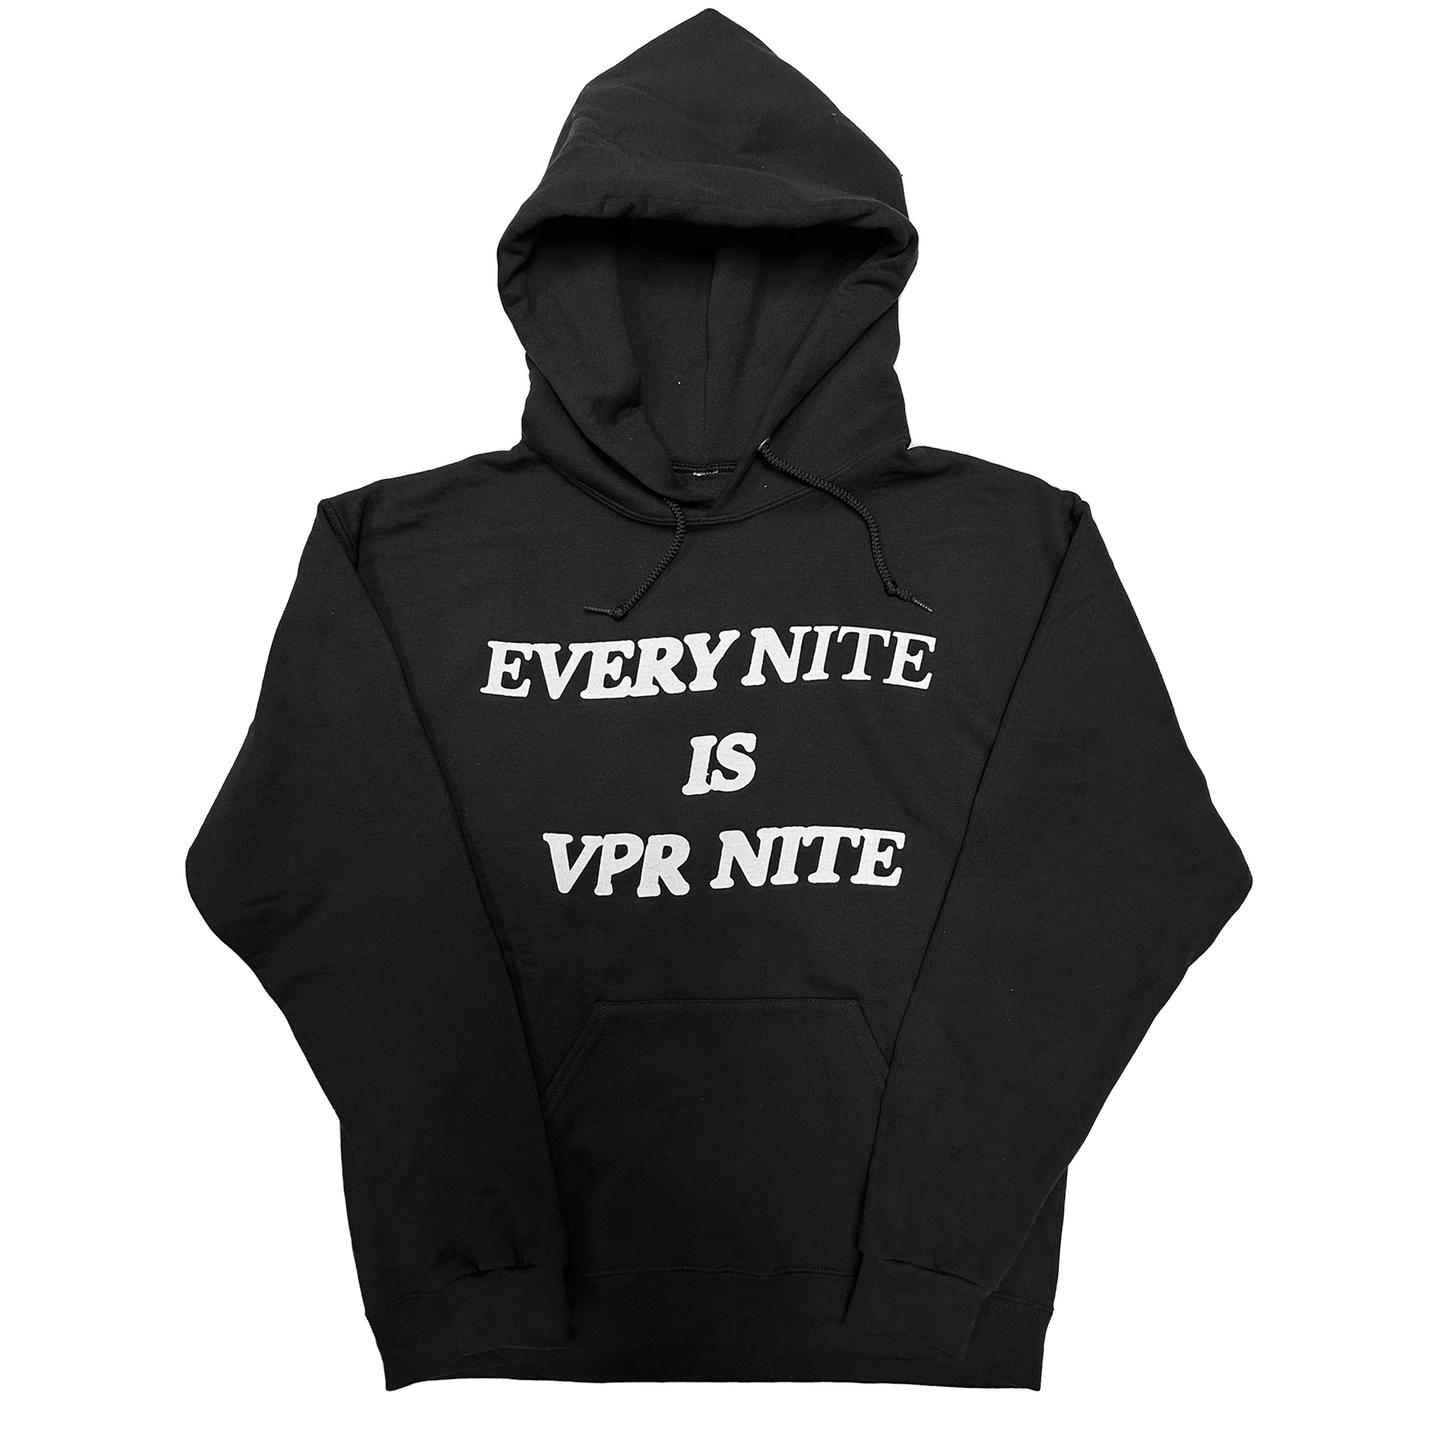 Every Nite is VPR Nite Hoodie - Black